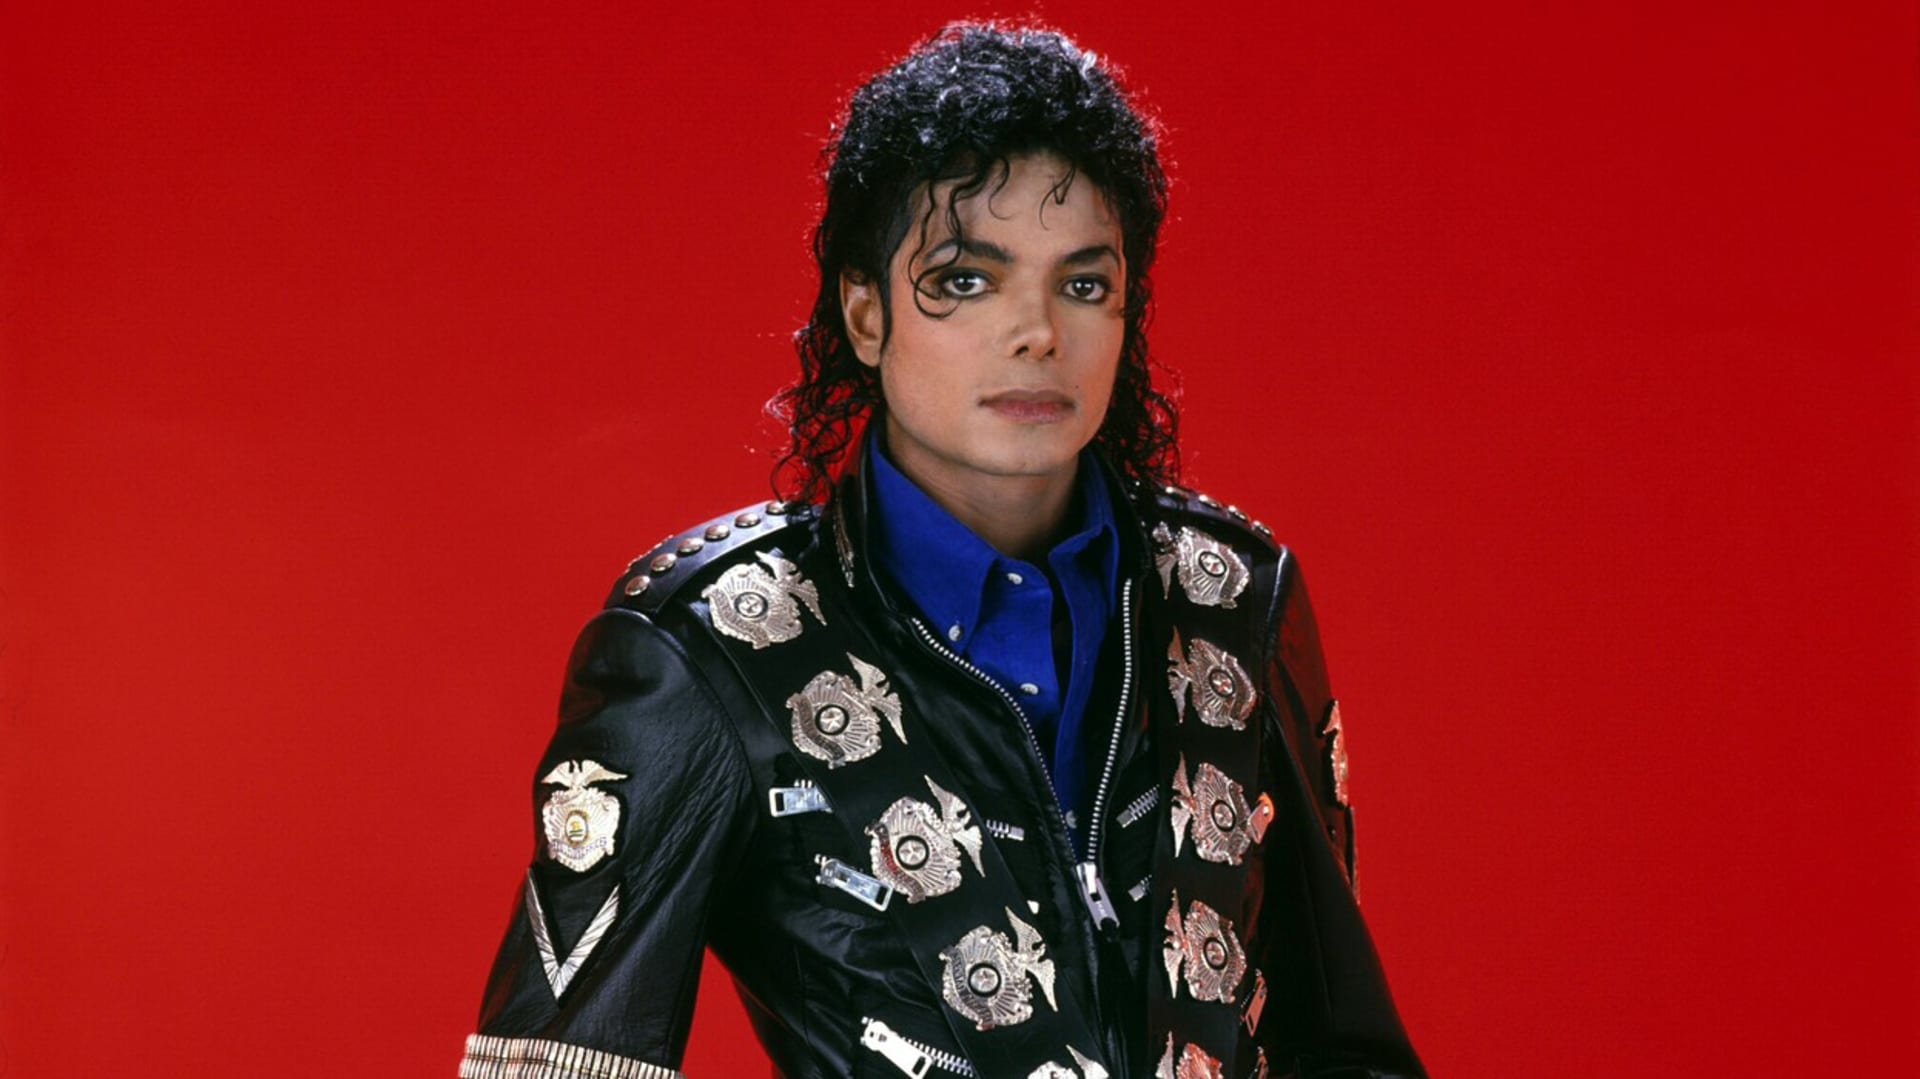 Vitiligo sužovalo také zpěváka Michaela Jacksona.